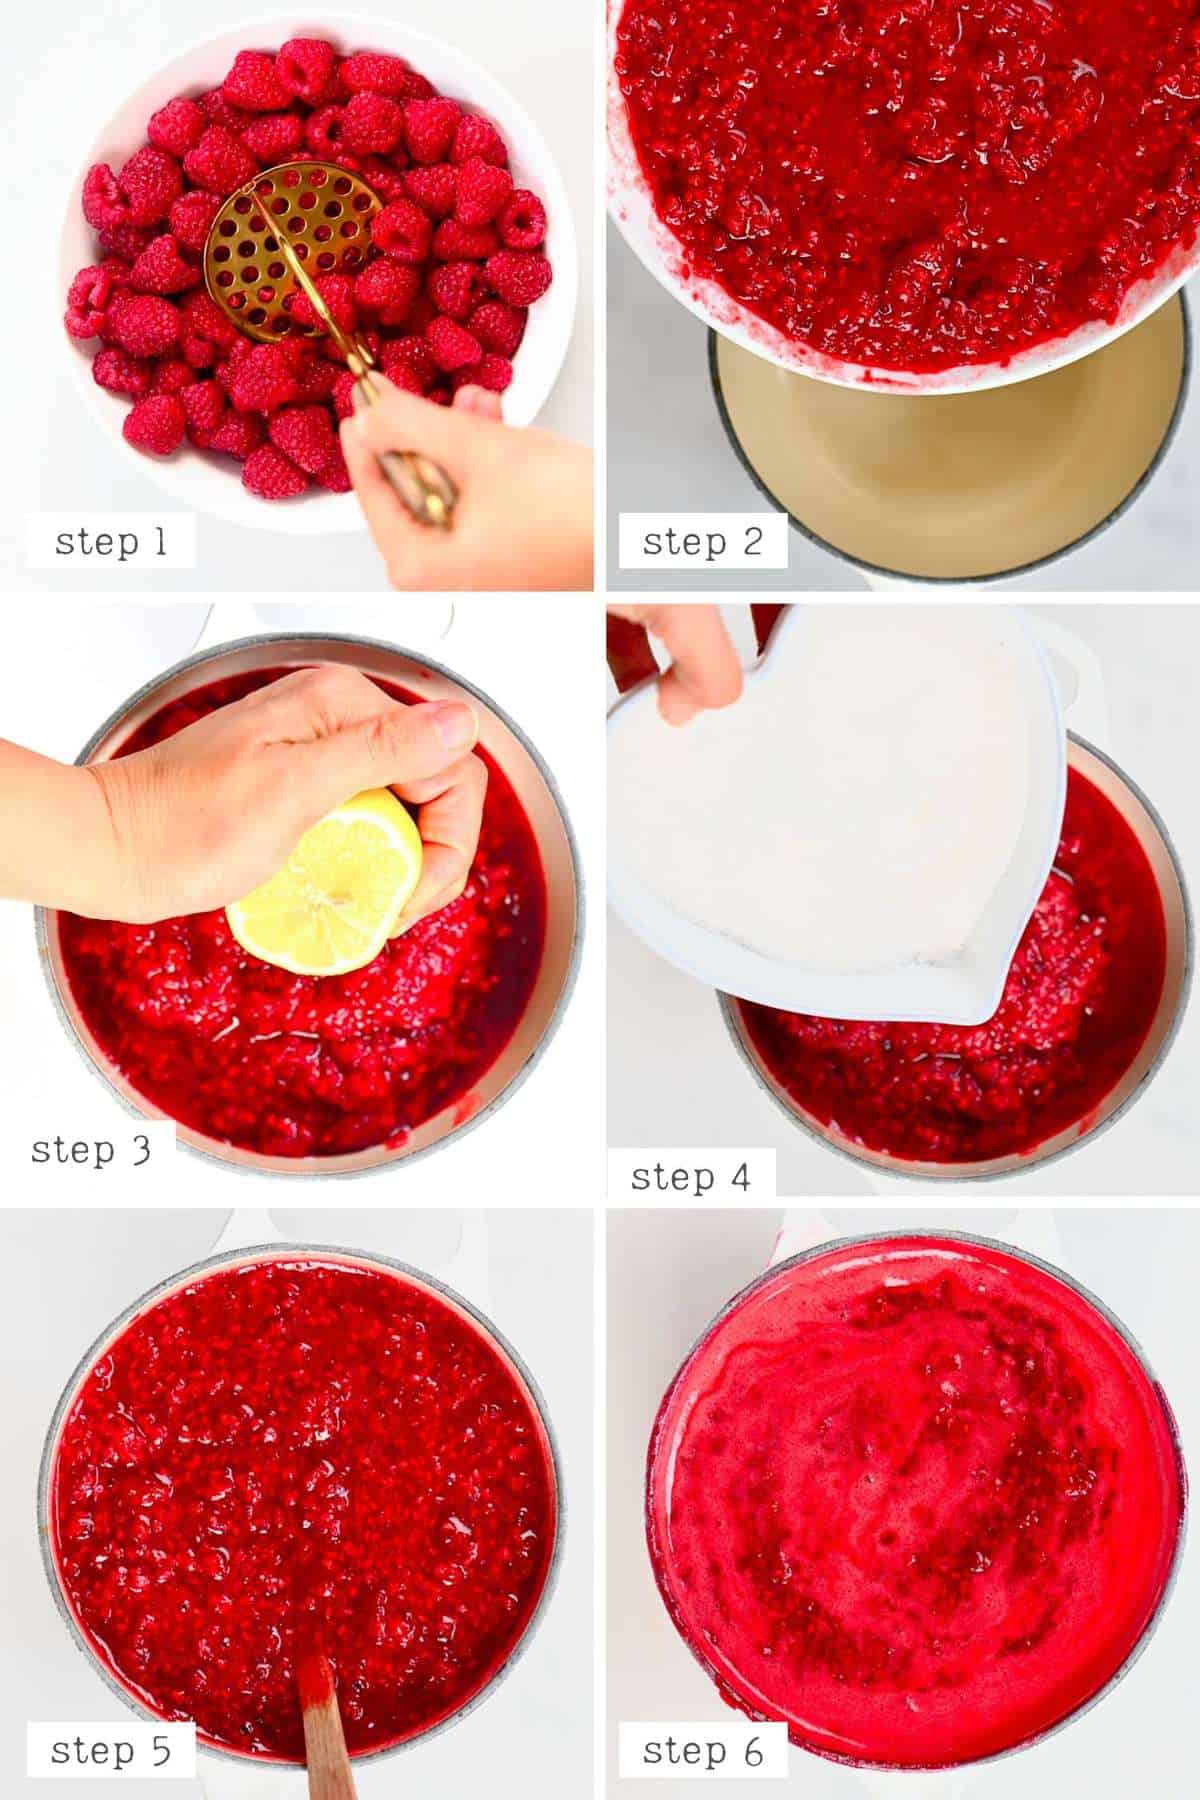 Steps for making Raspberry Jam